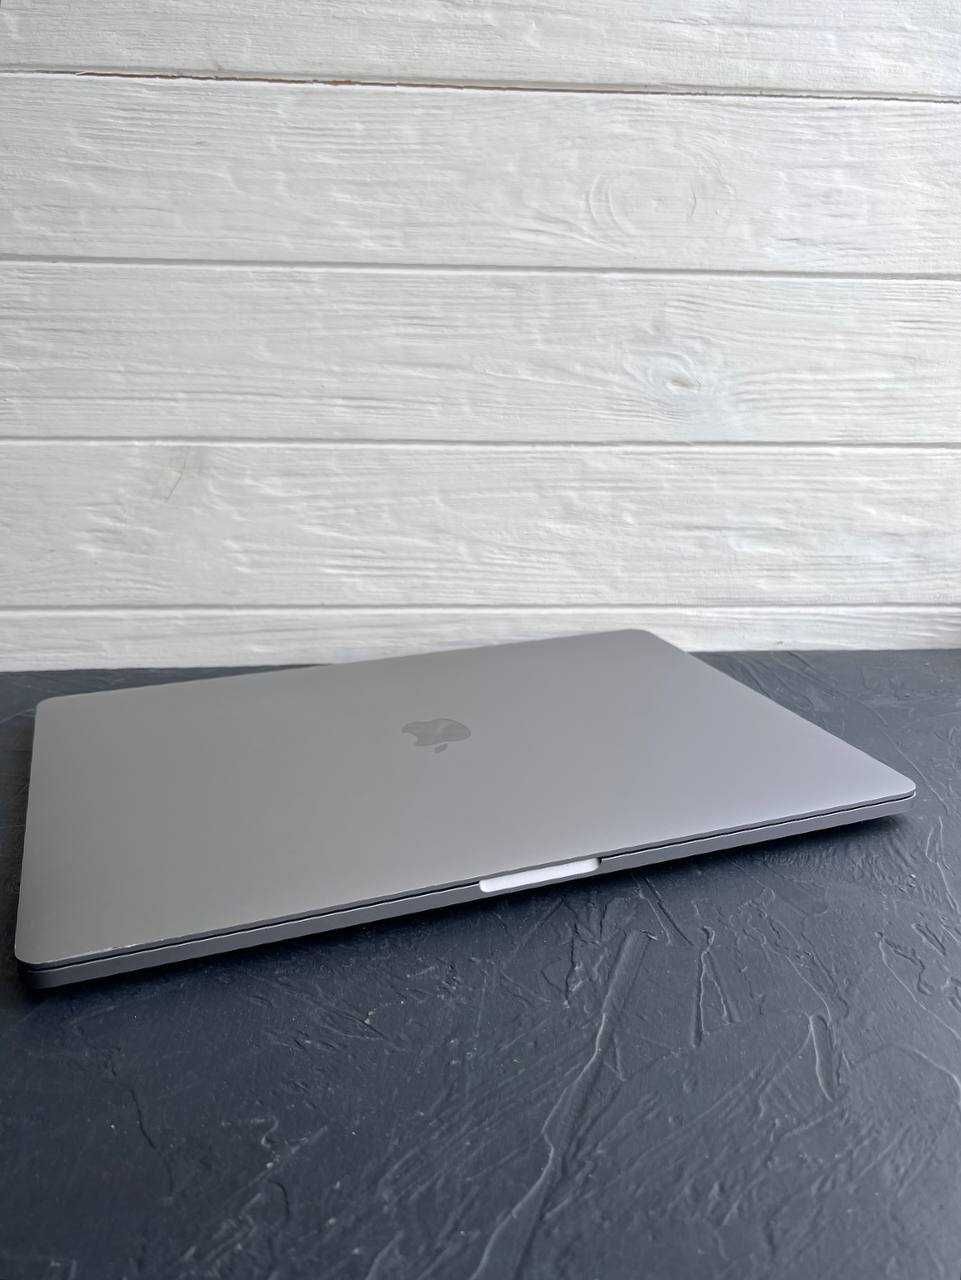 MacBook Pro 16” 2019 A2141 I7/16/512/5300m BAT: 75